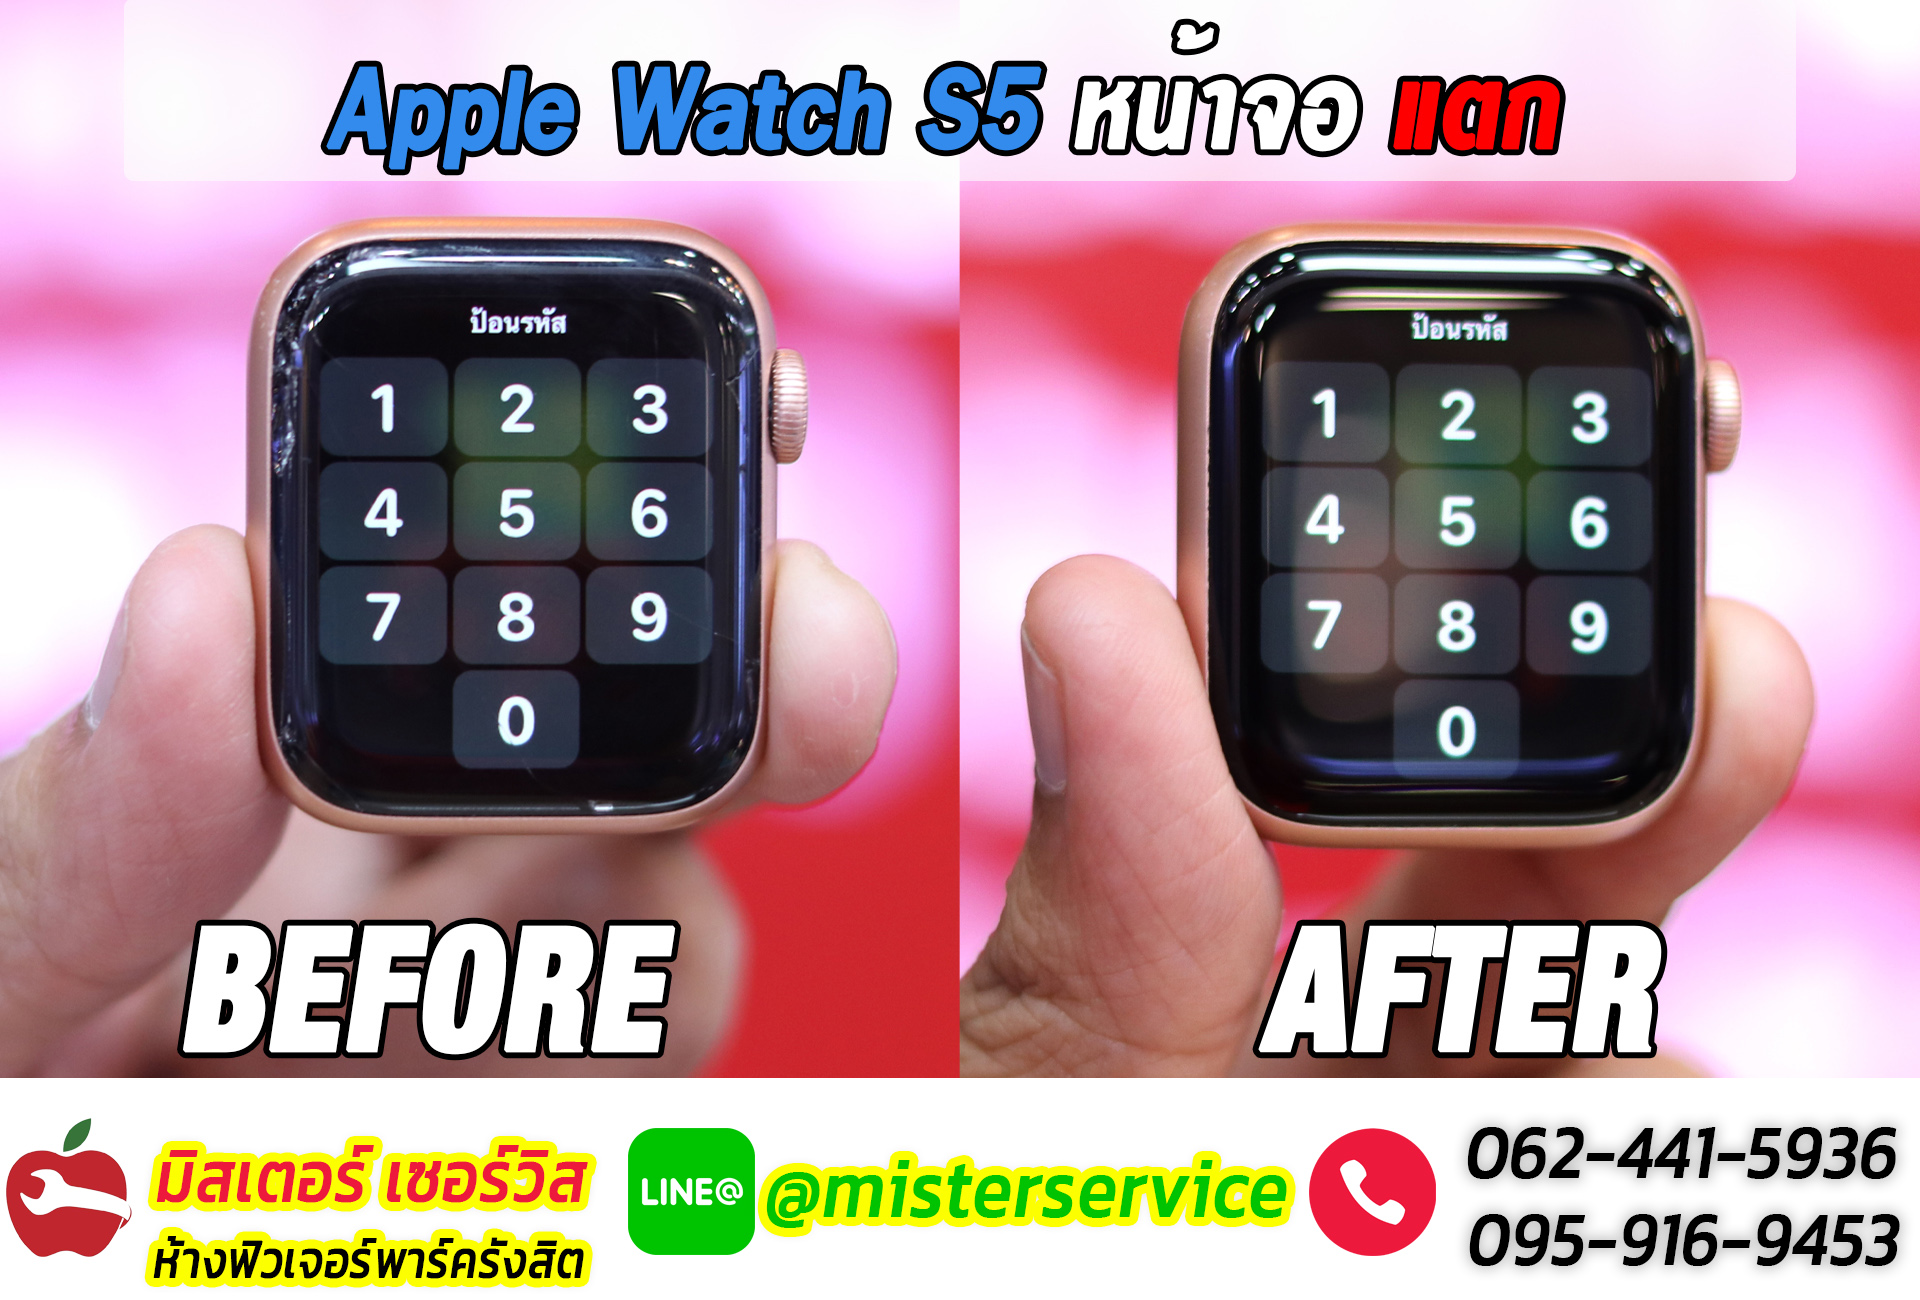 ซ่อม apple watch เมืองทองธานี ปากเกร็ด นนทบุรี